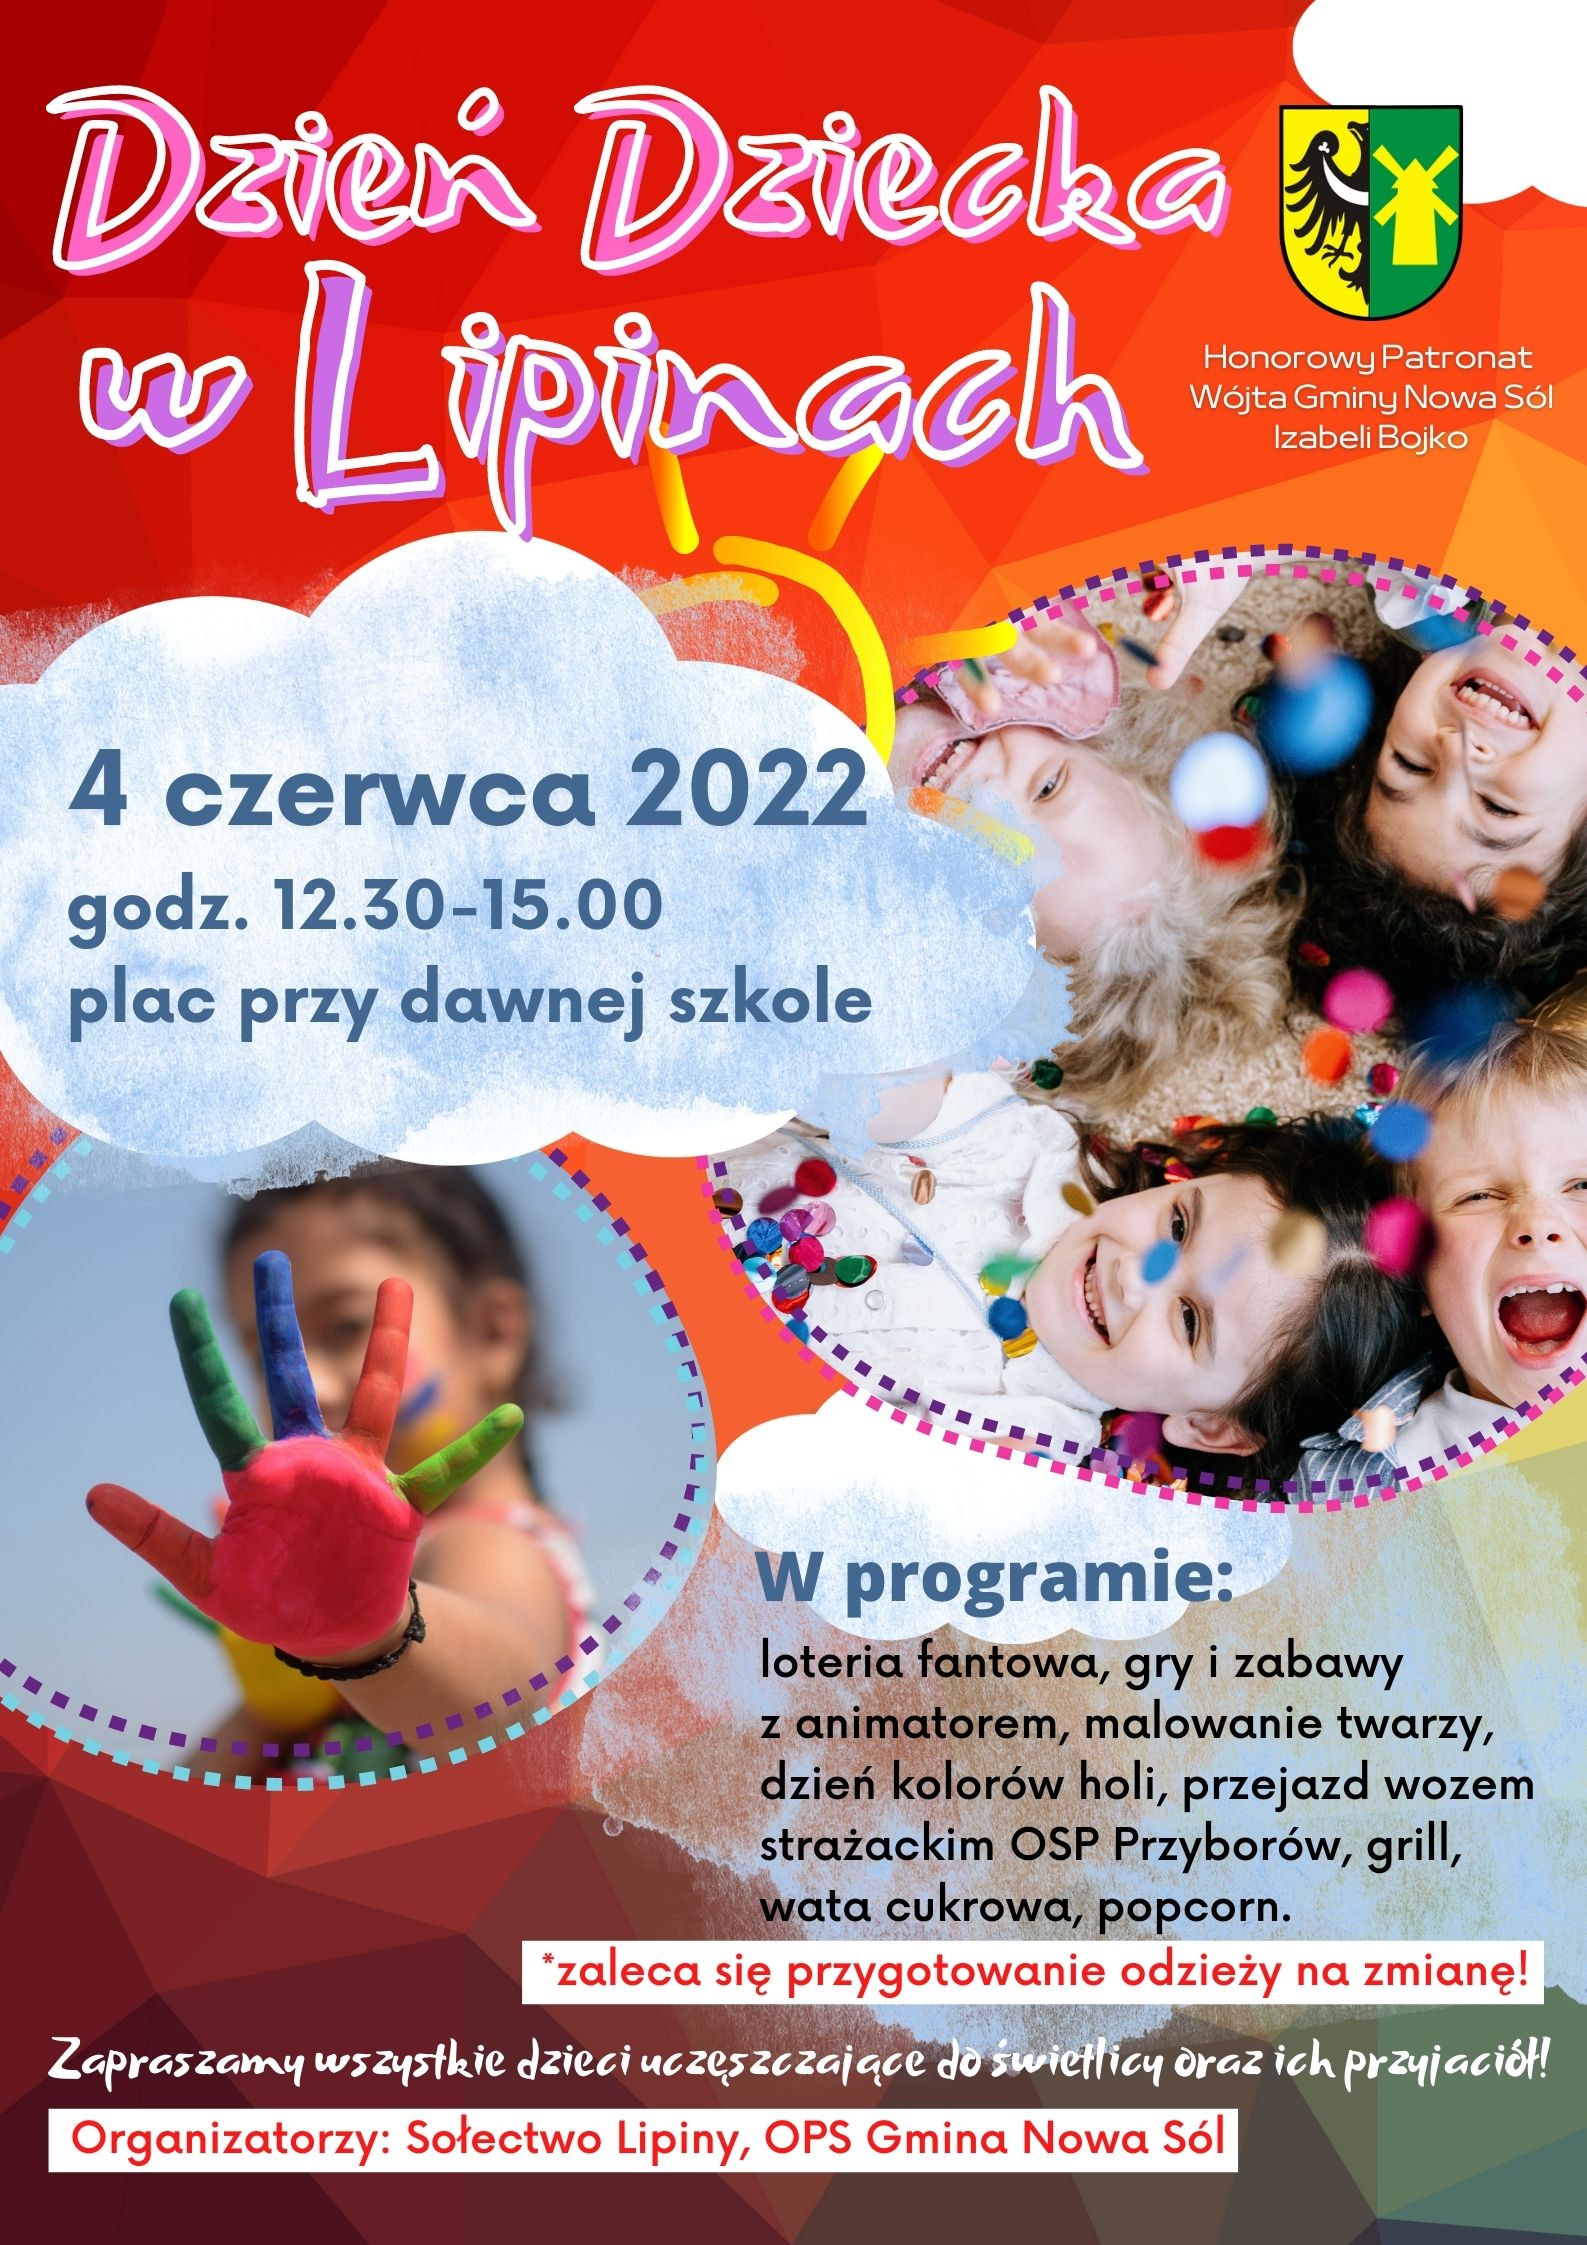 Plakat promujący Dzień Dziecka w Lipinach